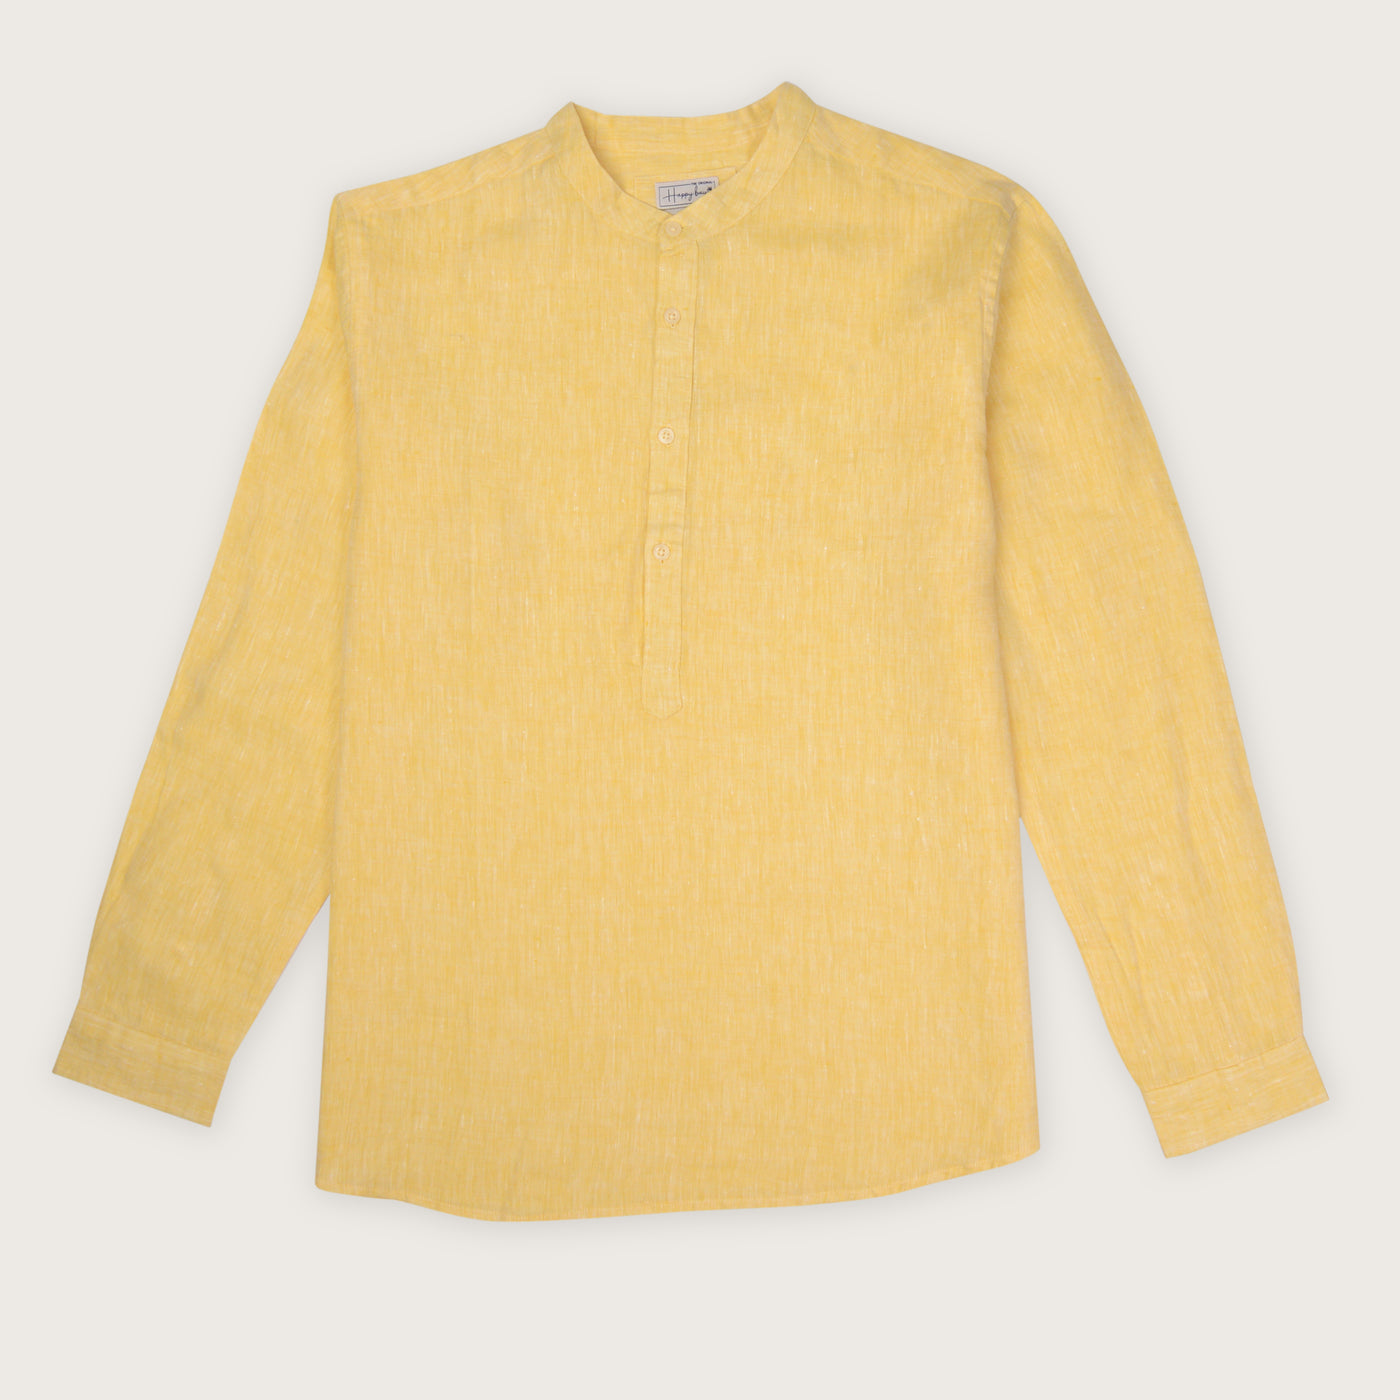 Buy now pure linen pure linen mellow yellow shirt